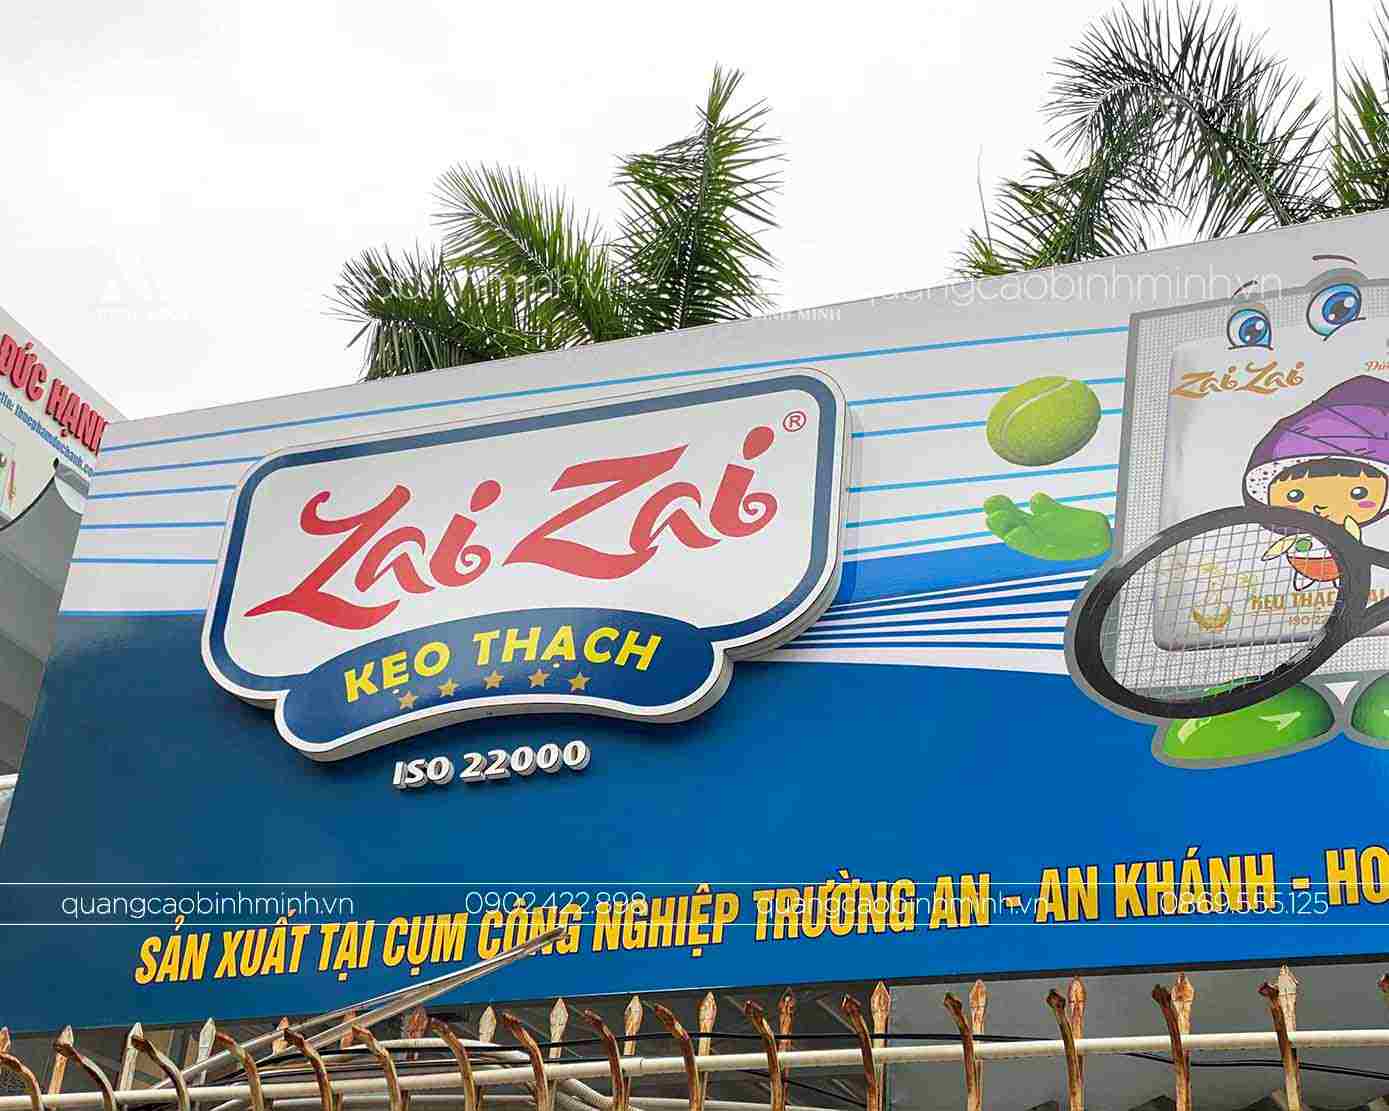 Biển quảng cáo công ty thương hiệu thạch Zai Zai